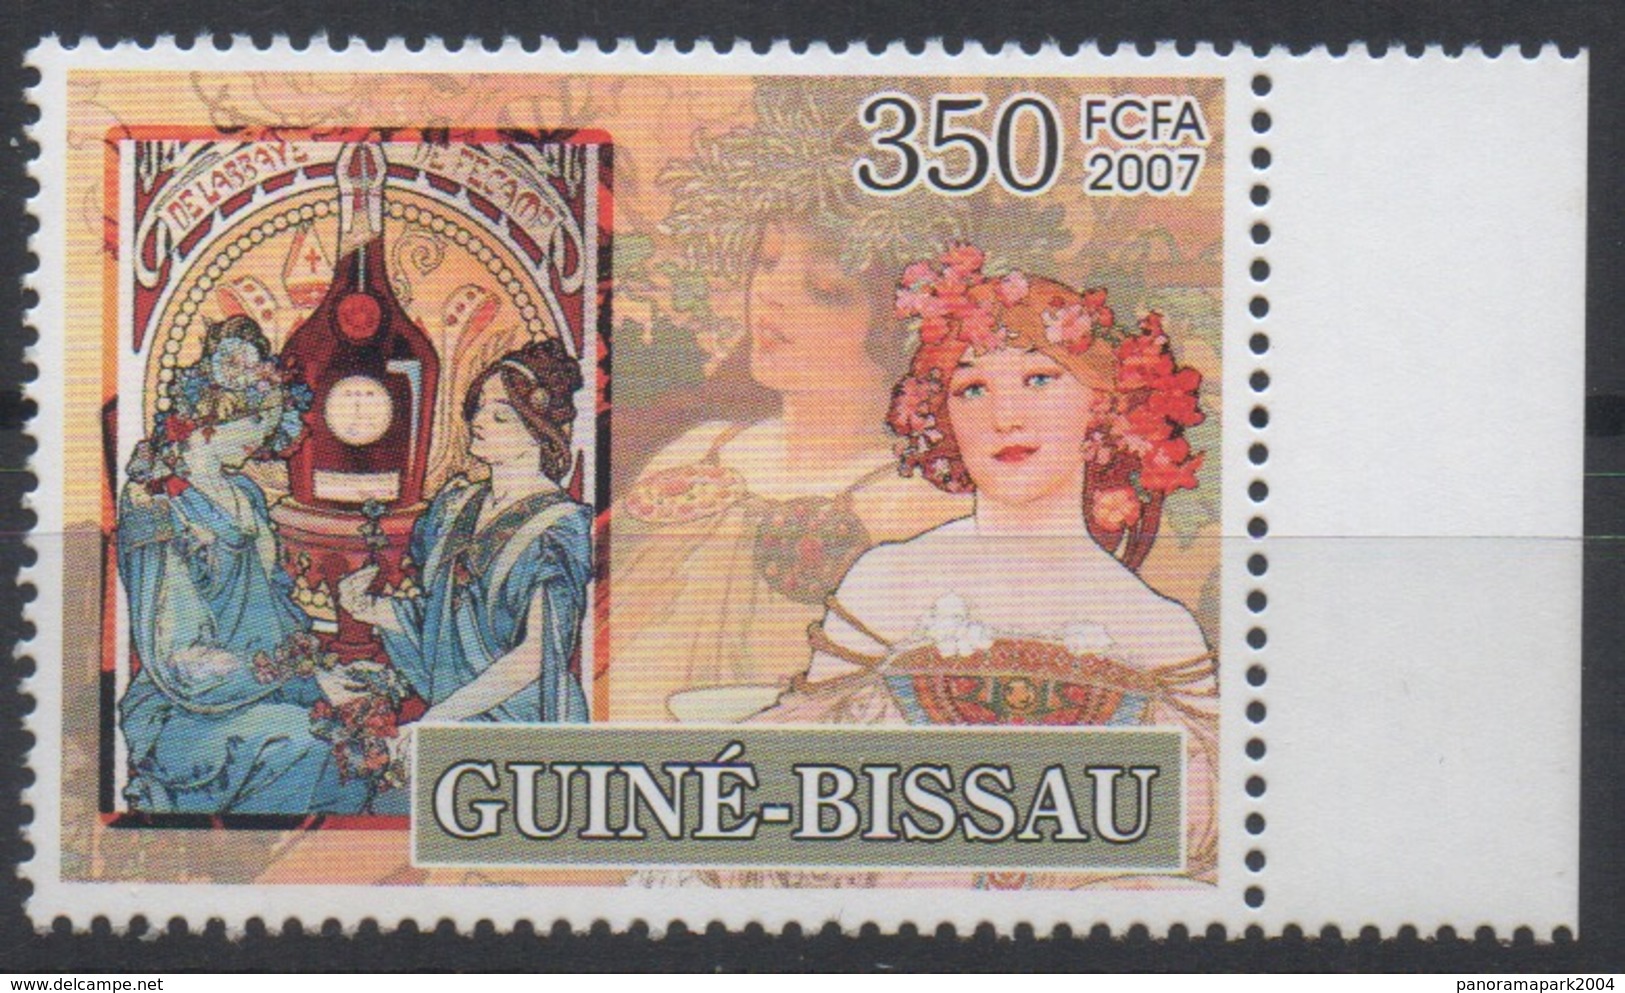 Guiné-Bissau Guinea Guinée Bissau 2007 Mi. 3536 Alfons Mucha Jugendstil Art Kunst Painting - Guinea-Bissau